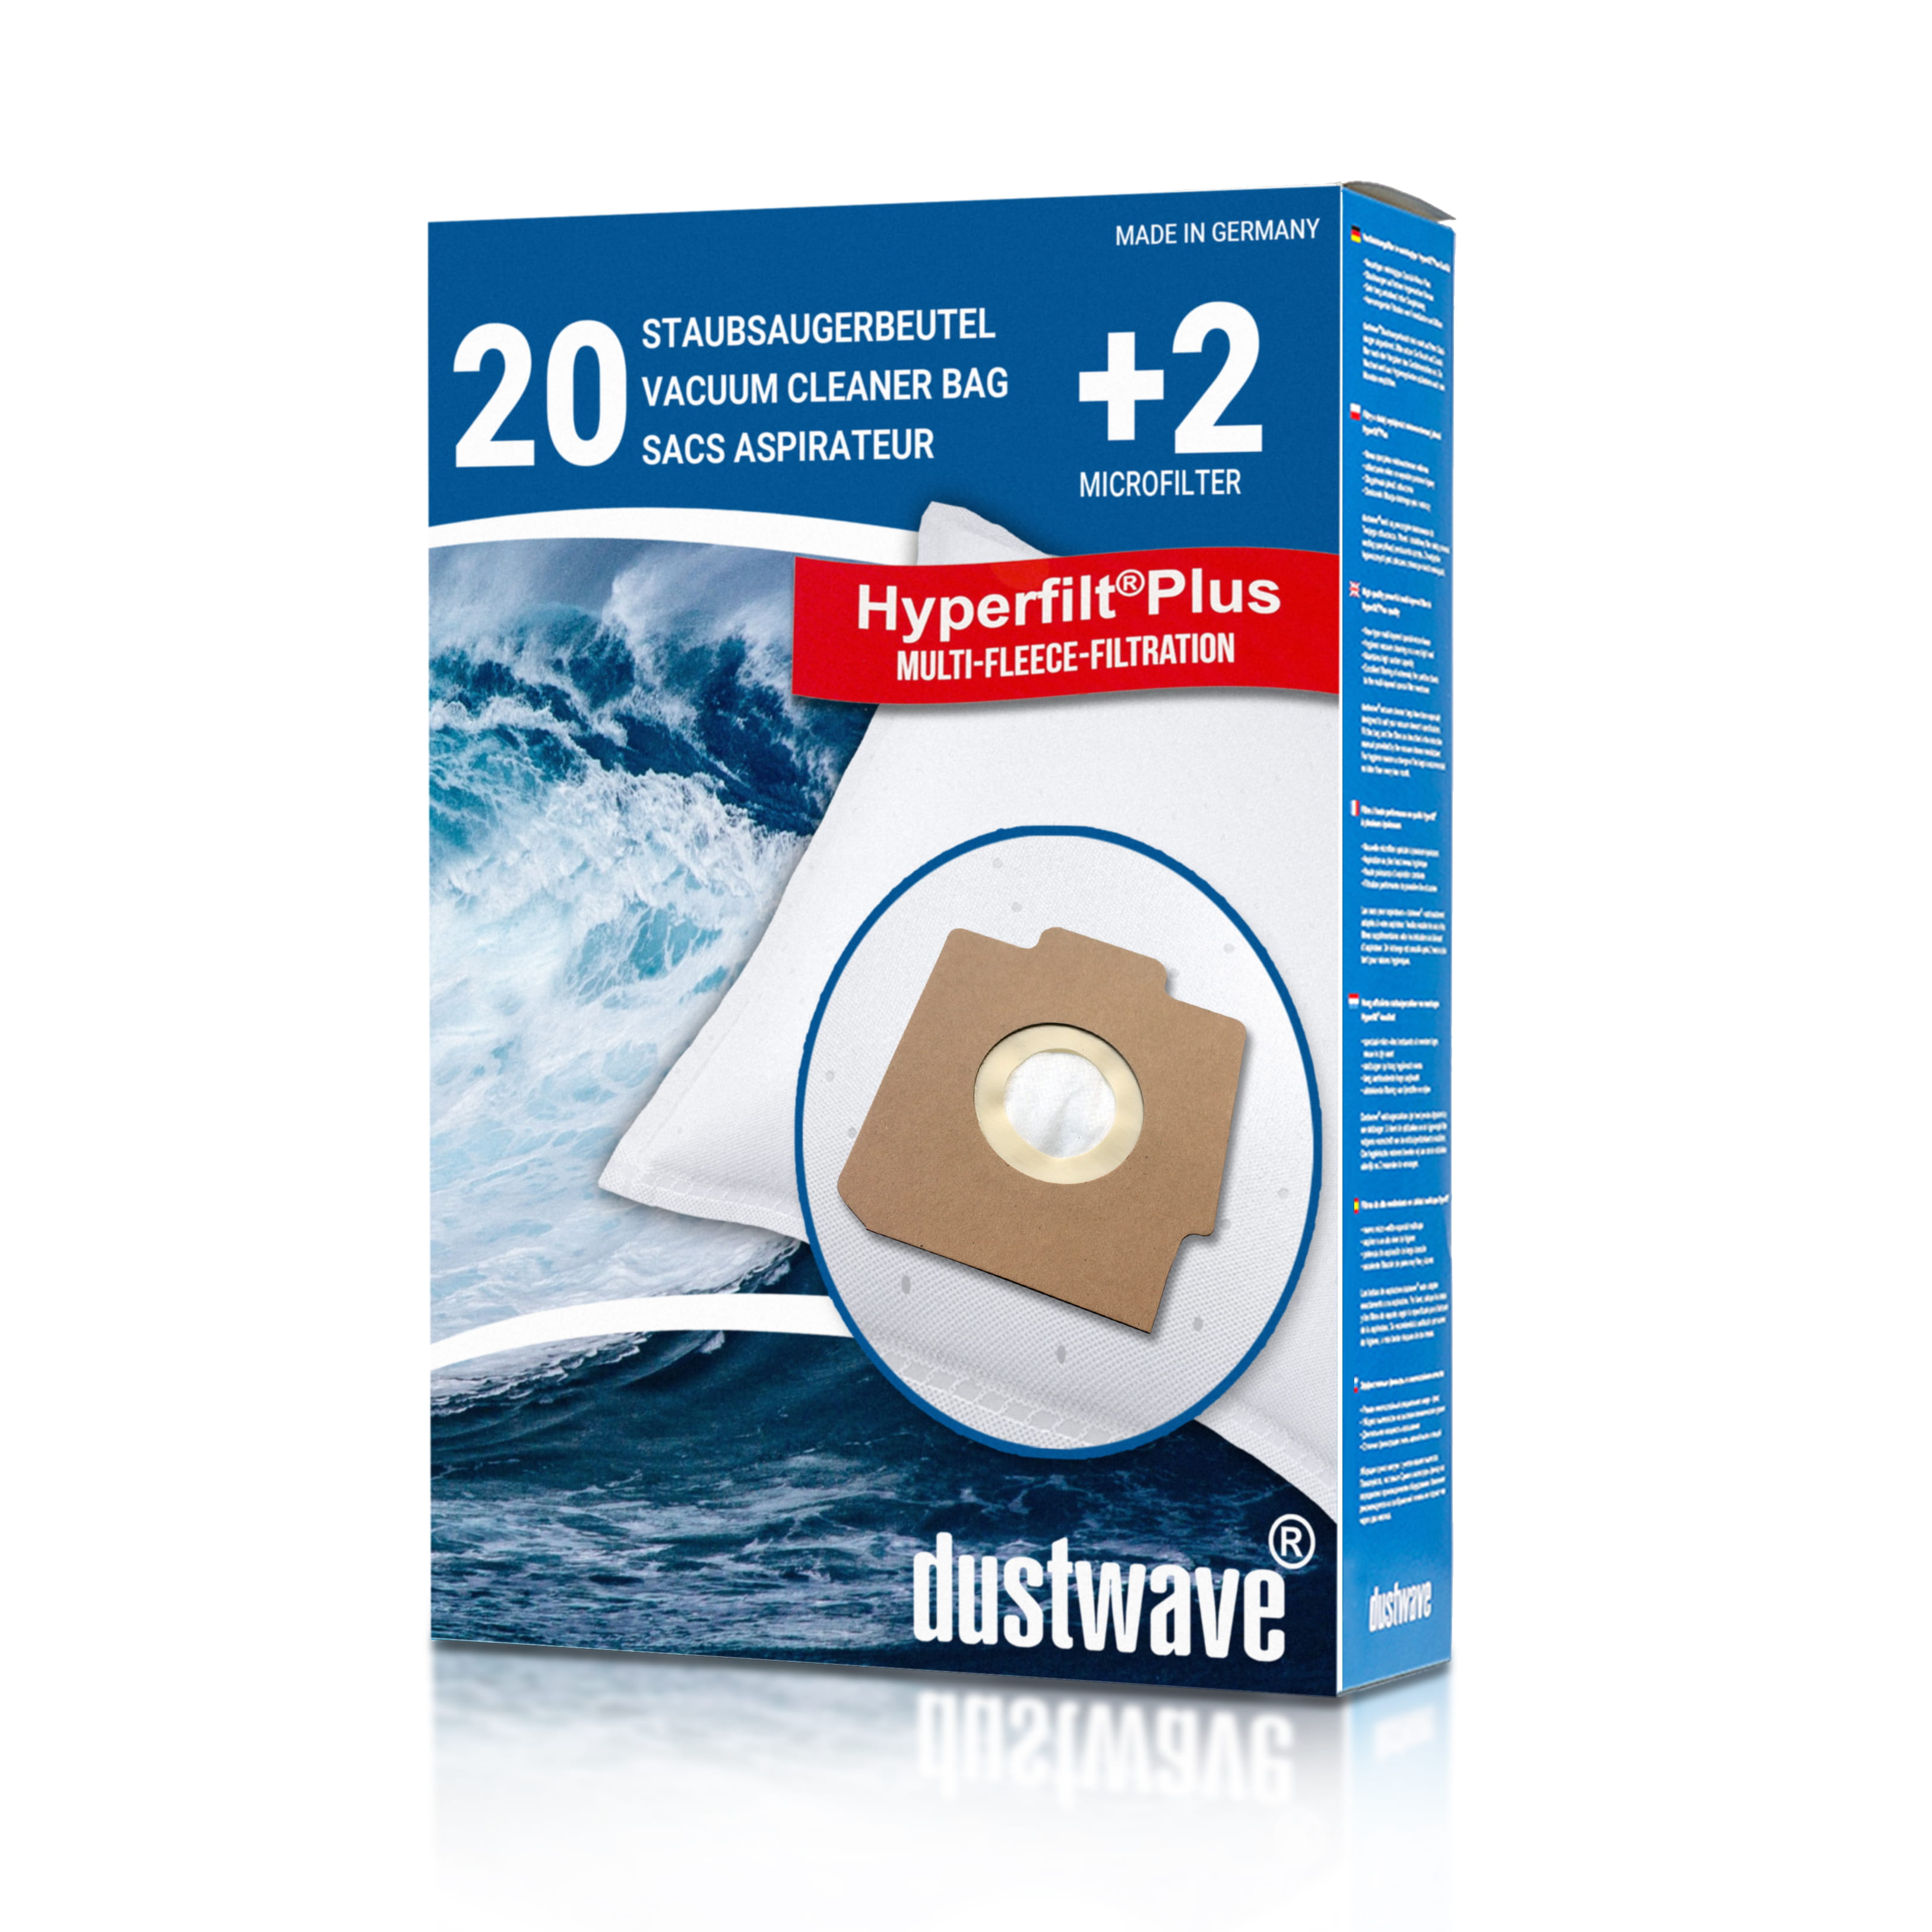 Dustwave® 20 Staubsaugerbeutel für Hoover SC192... / TRSC192 Alpina - hocheffizient, mehrlagiges Mikrovlies mit Hygieneverschluss - Made in Germany